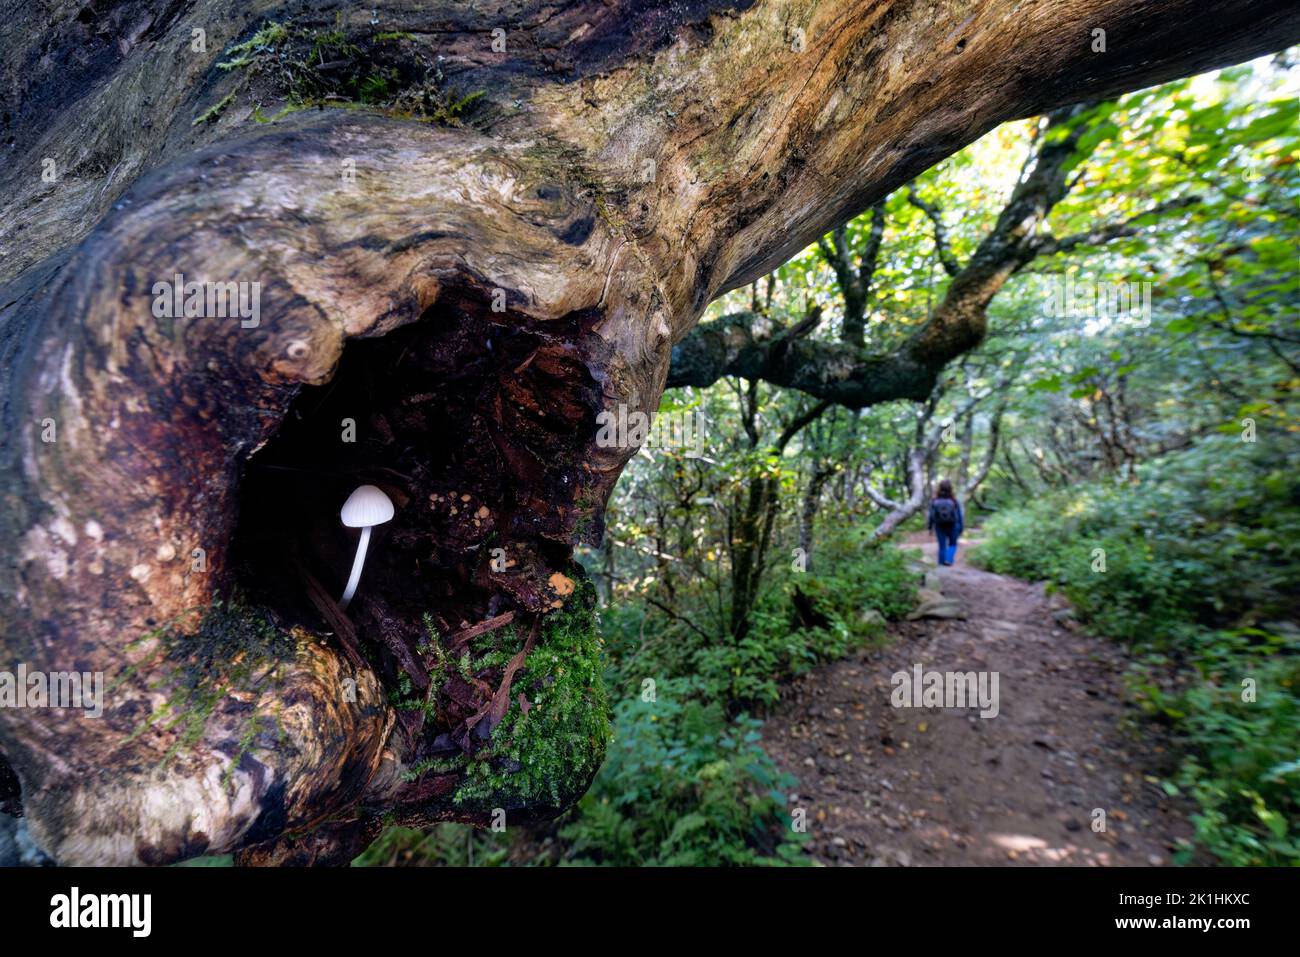 Piccolo fungo bianco che cresce nella cavità dell'albero - Craggy Gardens, Blue Ridge Parkway, vicino Asheville, North Carolina, USA Foto Stock